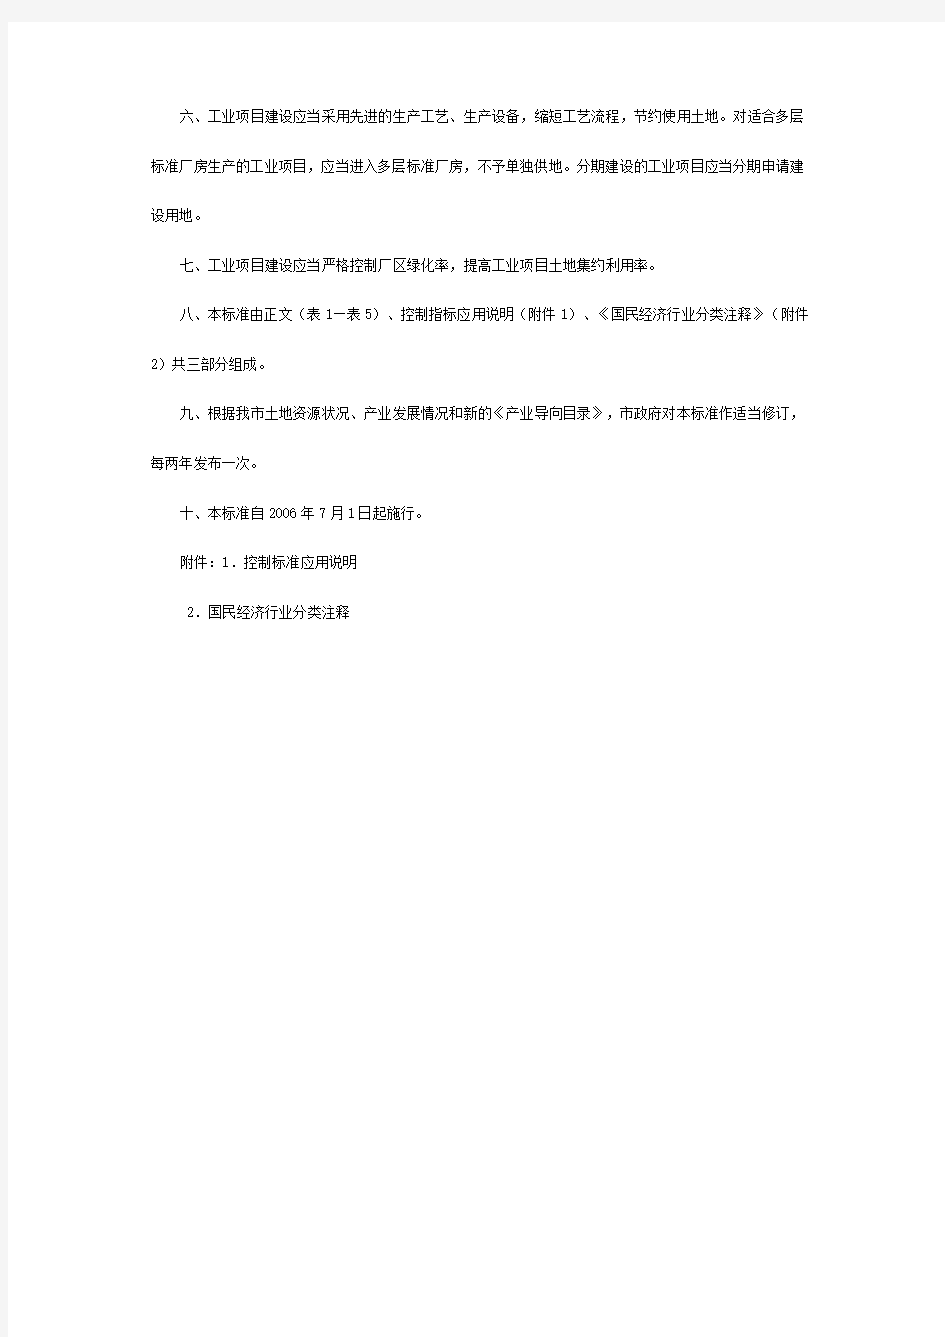 深圳市人民政府关于印发深圳市工业项目建设用地控制标准